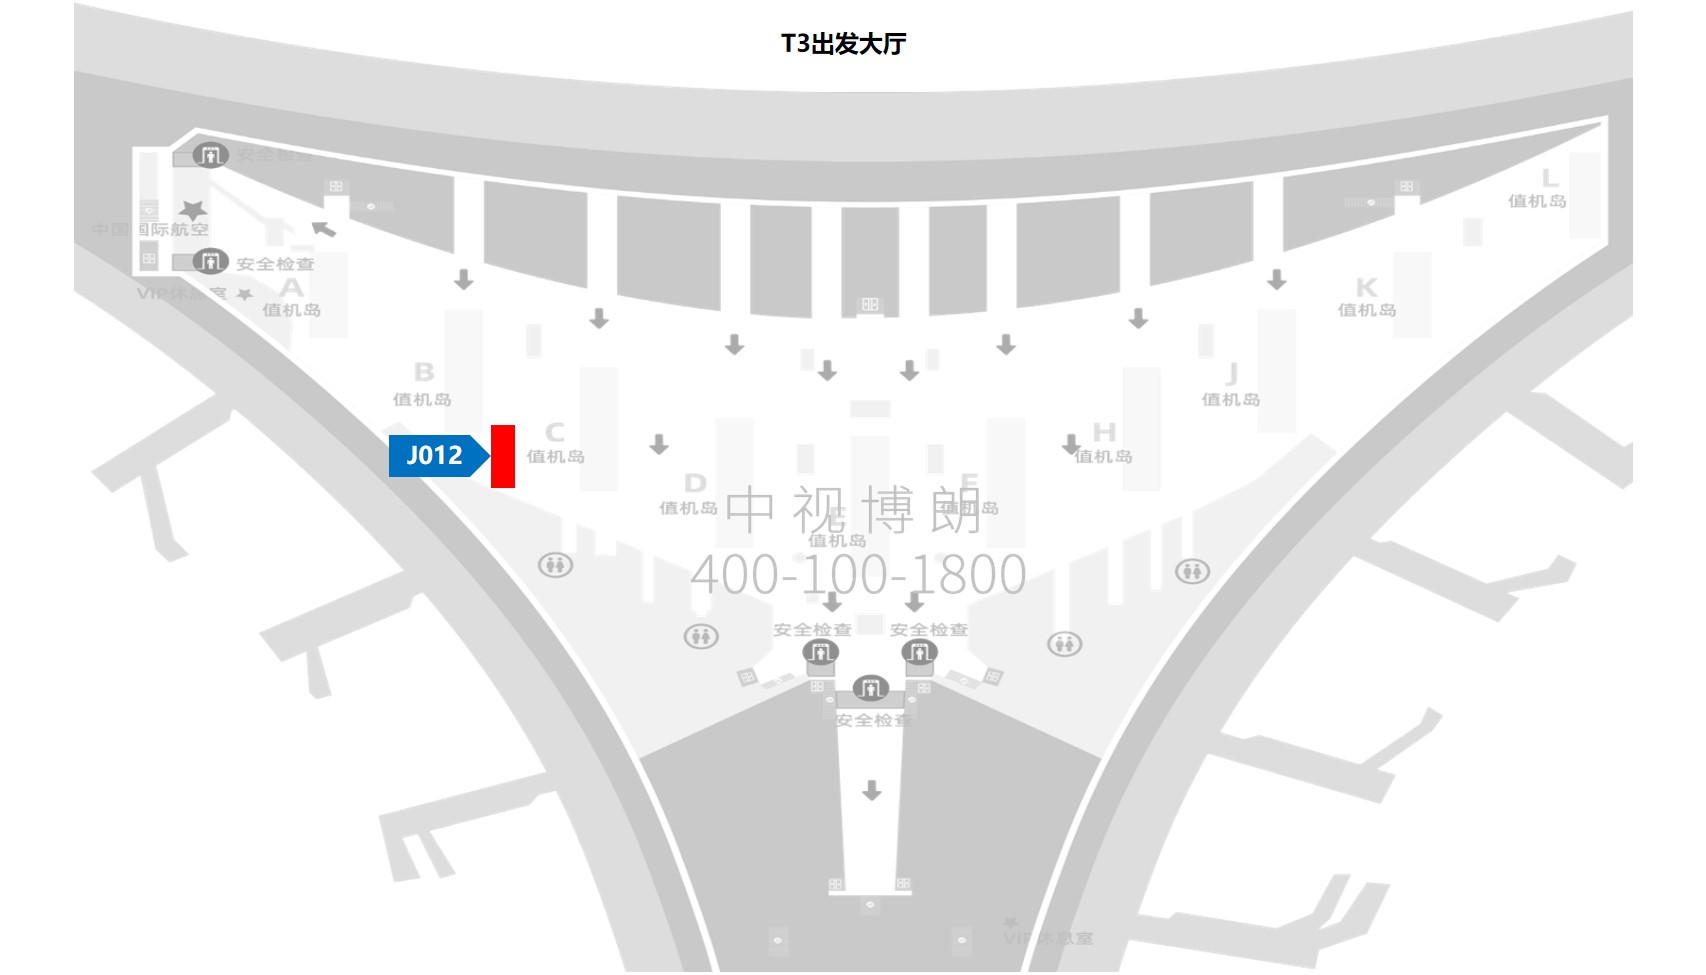 北京首都机场广告-T3出发大厅图腾灯箱J012位置图